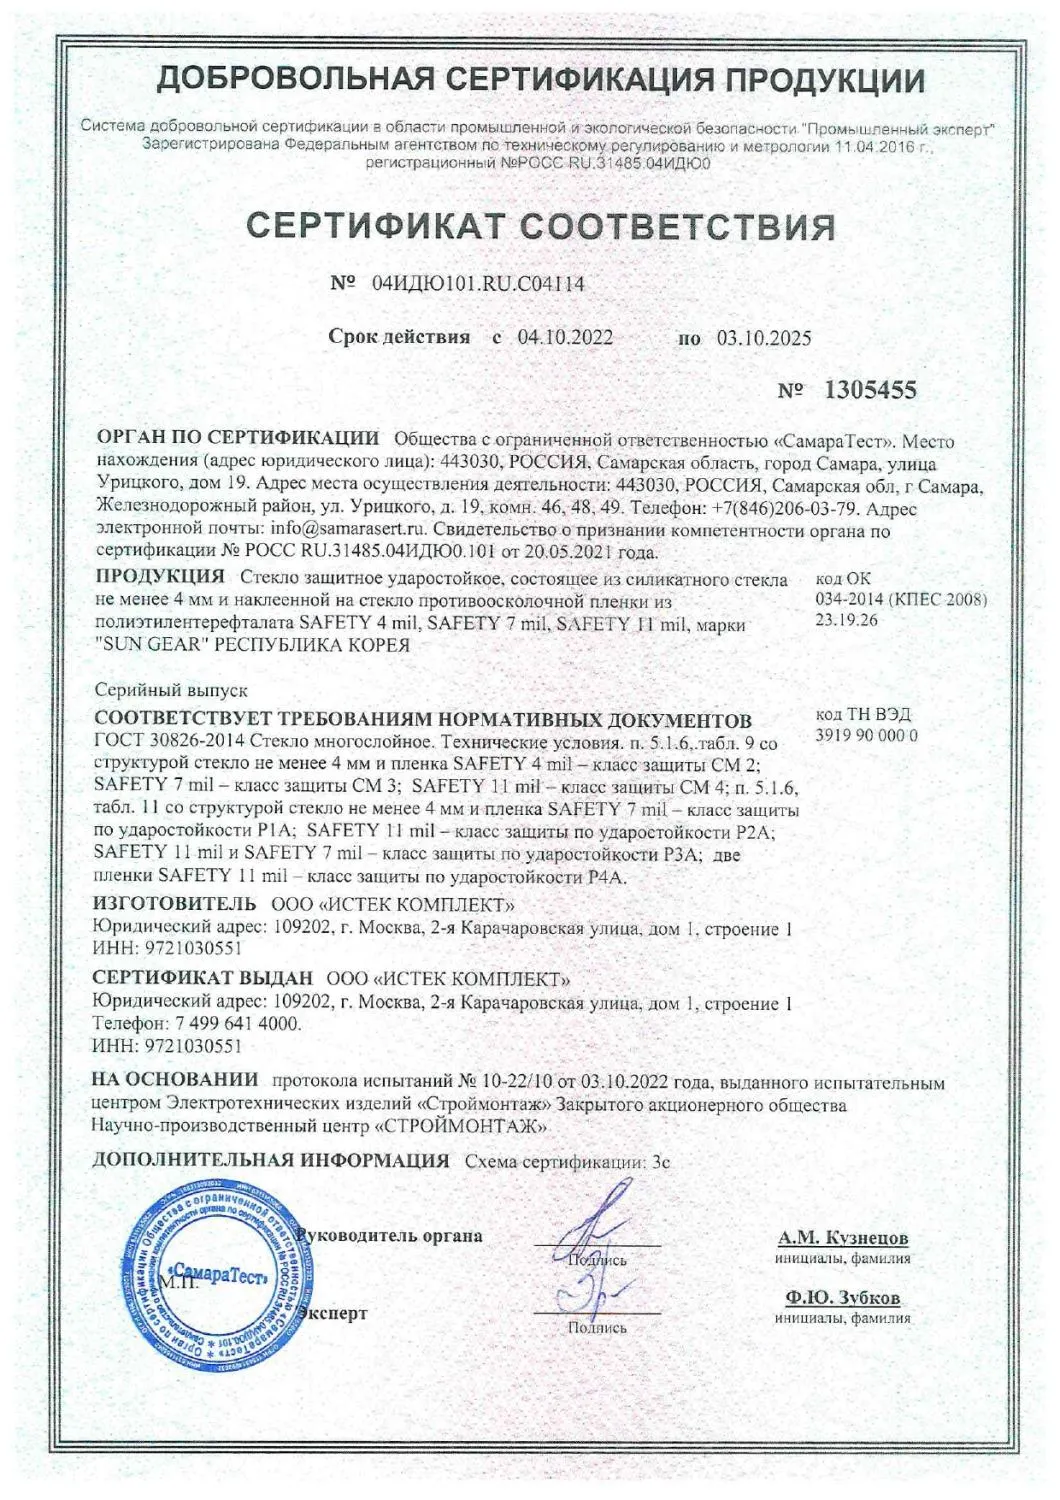 Сертификат соответствия по классам защиты